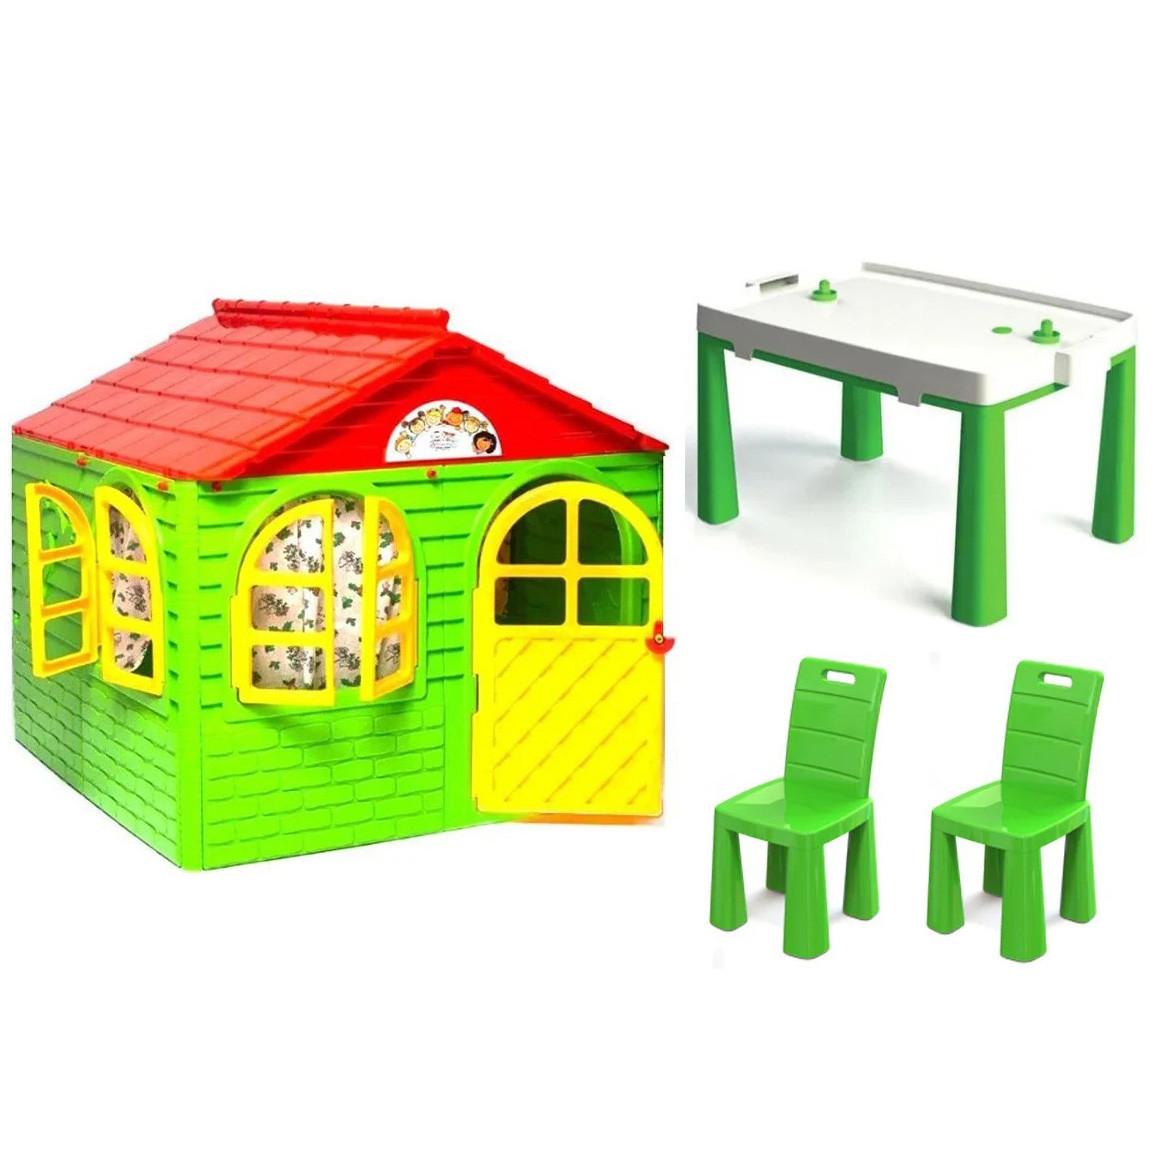 Дитячий ігровий будиночок з шторками + столик зі стільчиками Doloni для дітей